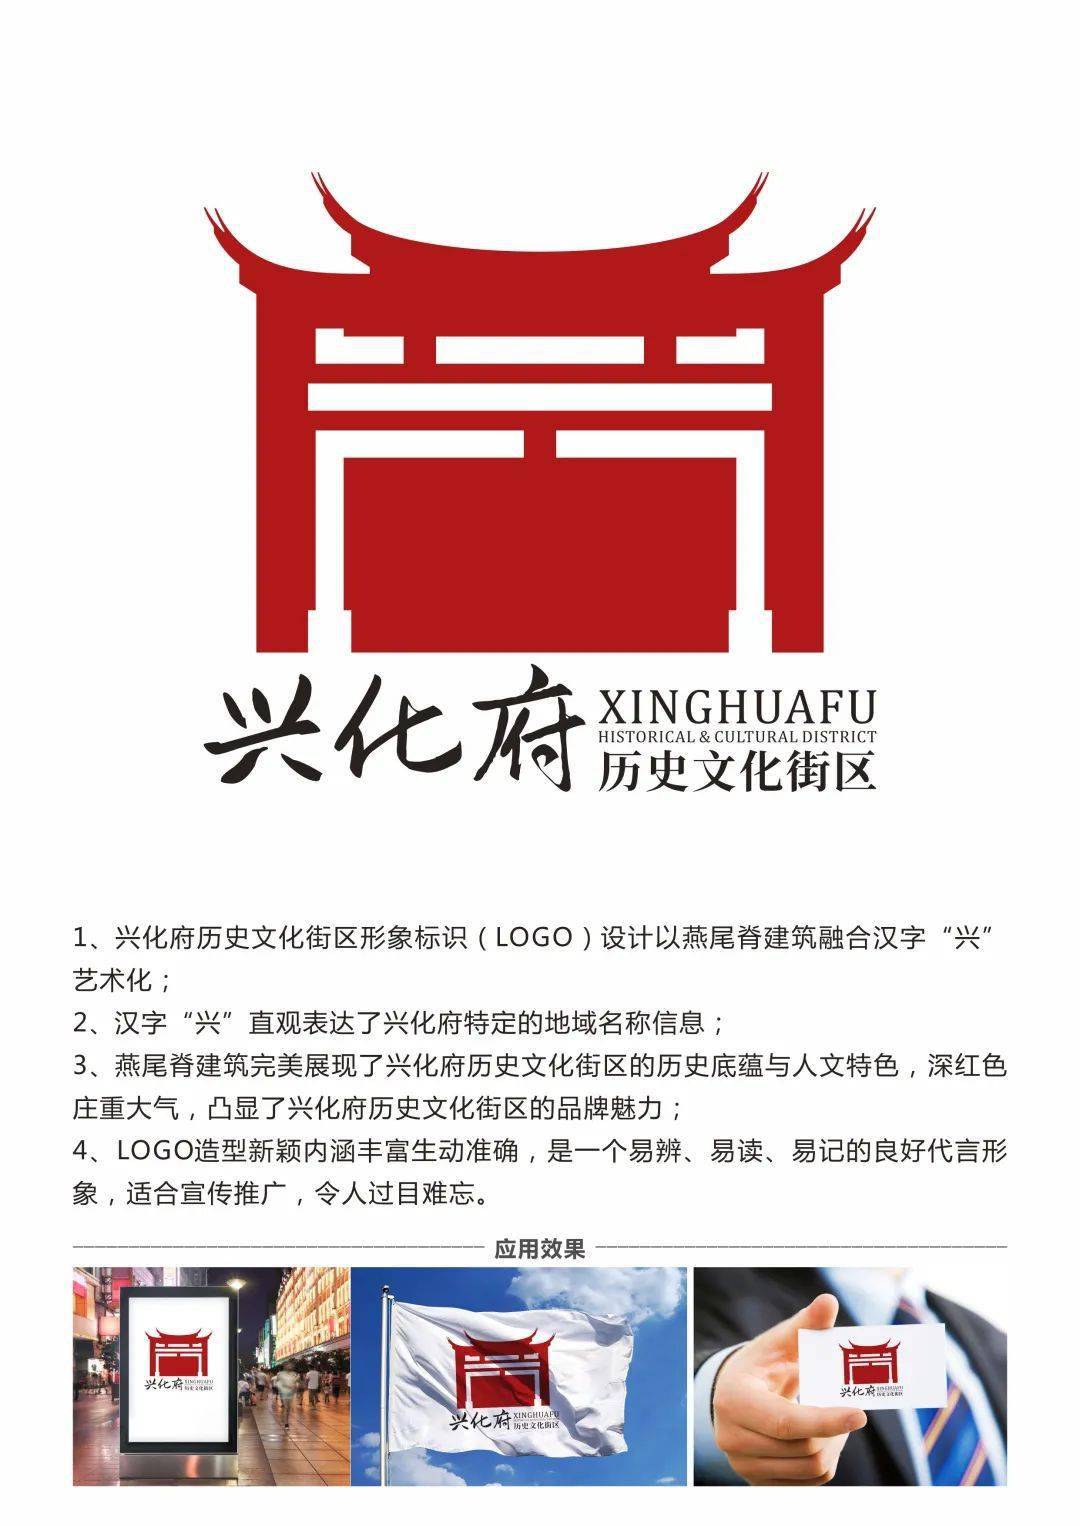 莆田"兴化府历史文化街区"logo,开始投票啦!